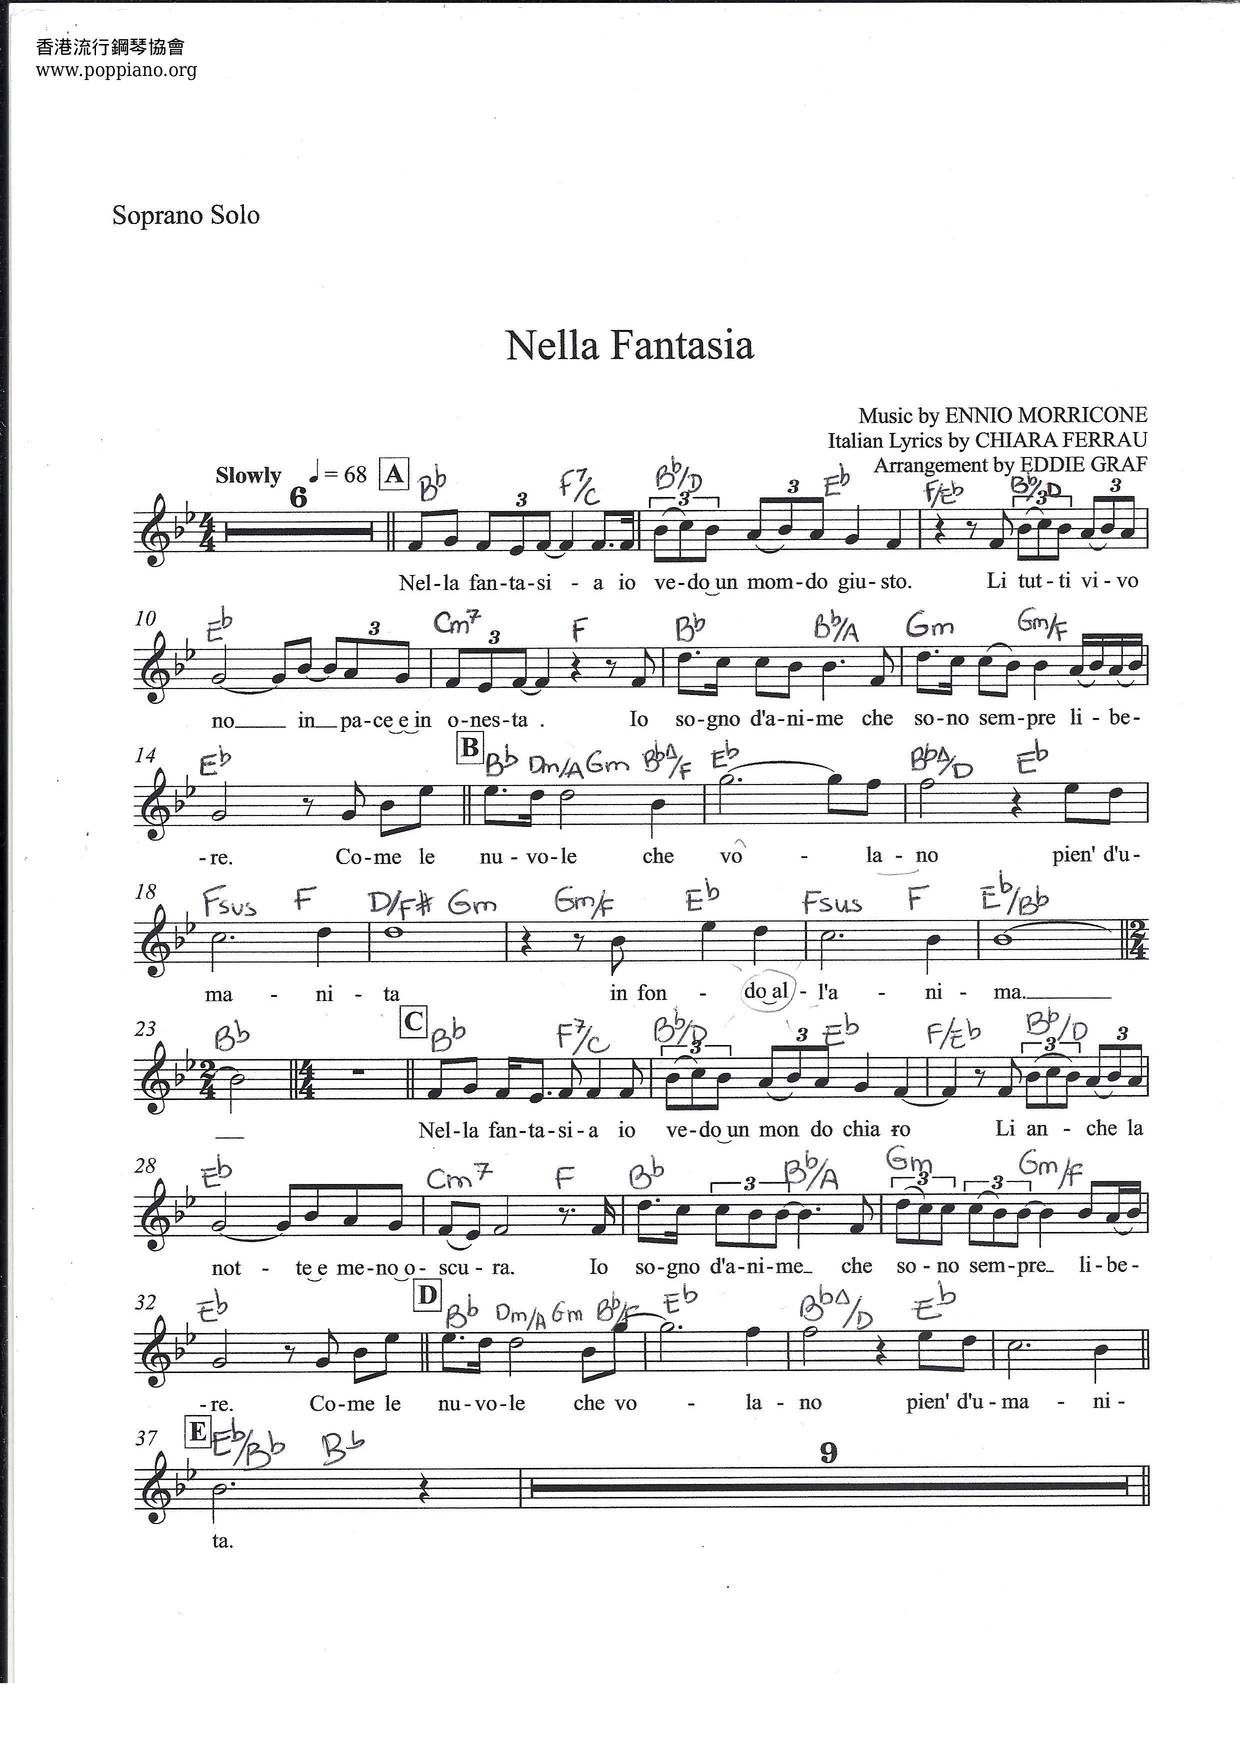 Nella Fantasia Score